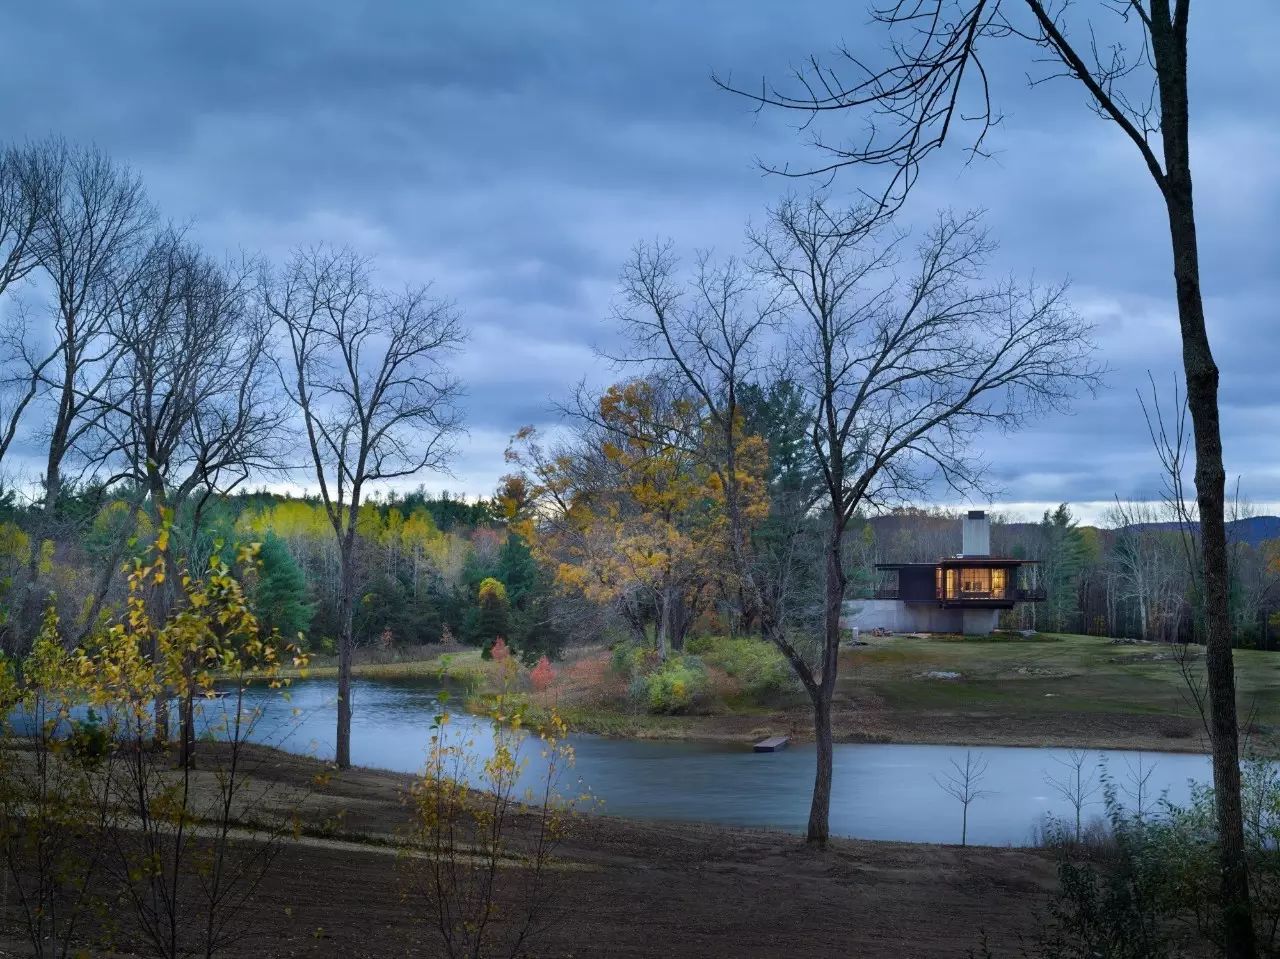 坐落在伯克郡300亩原生态森林的别墅 安静,唯美的自然环境 是绝佳的